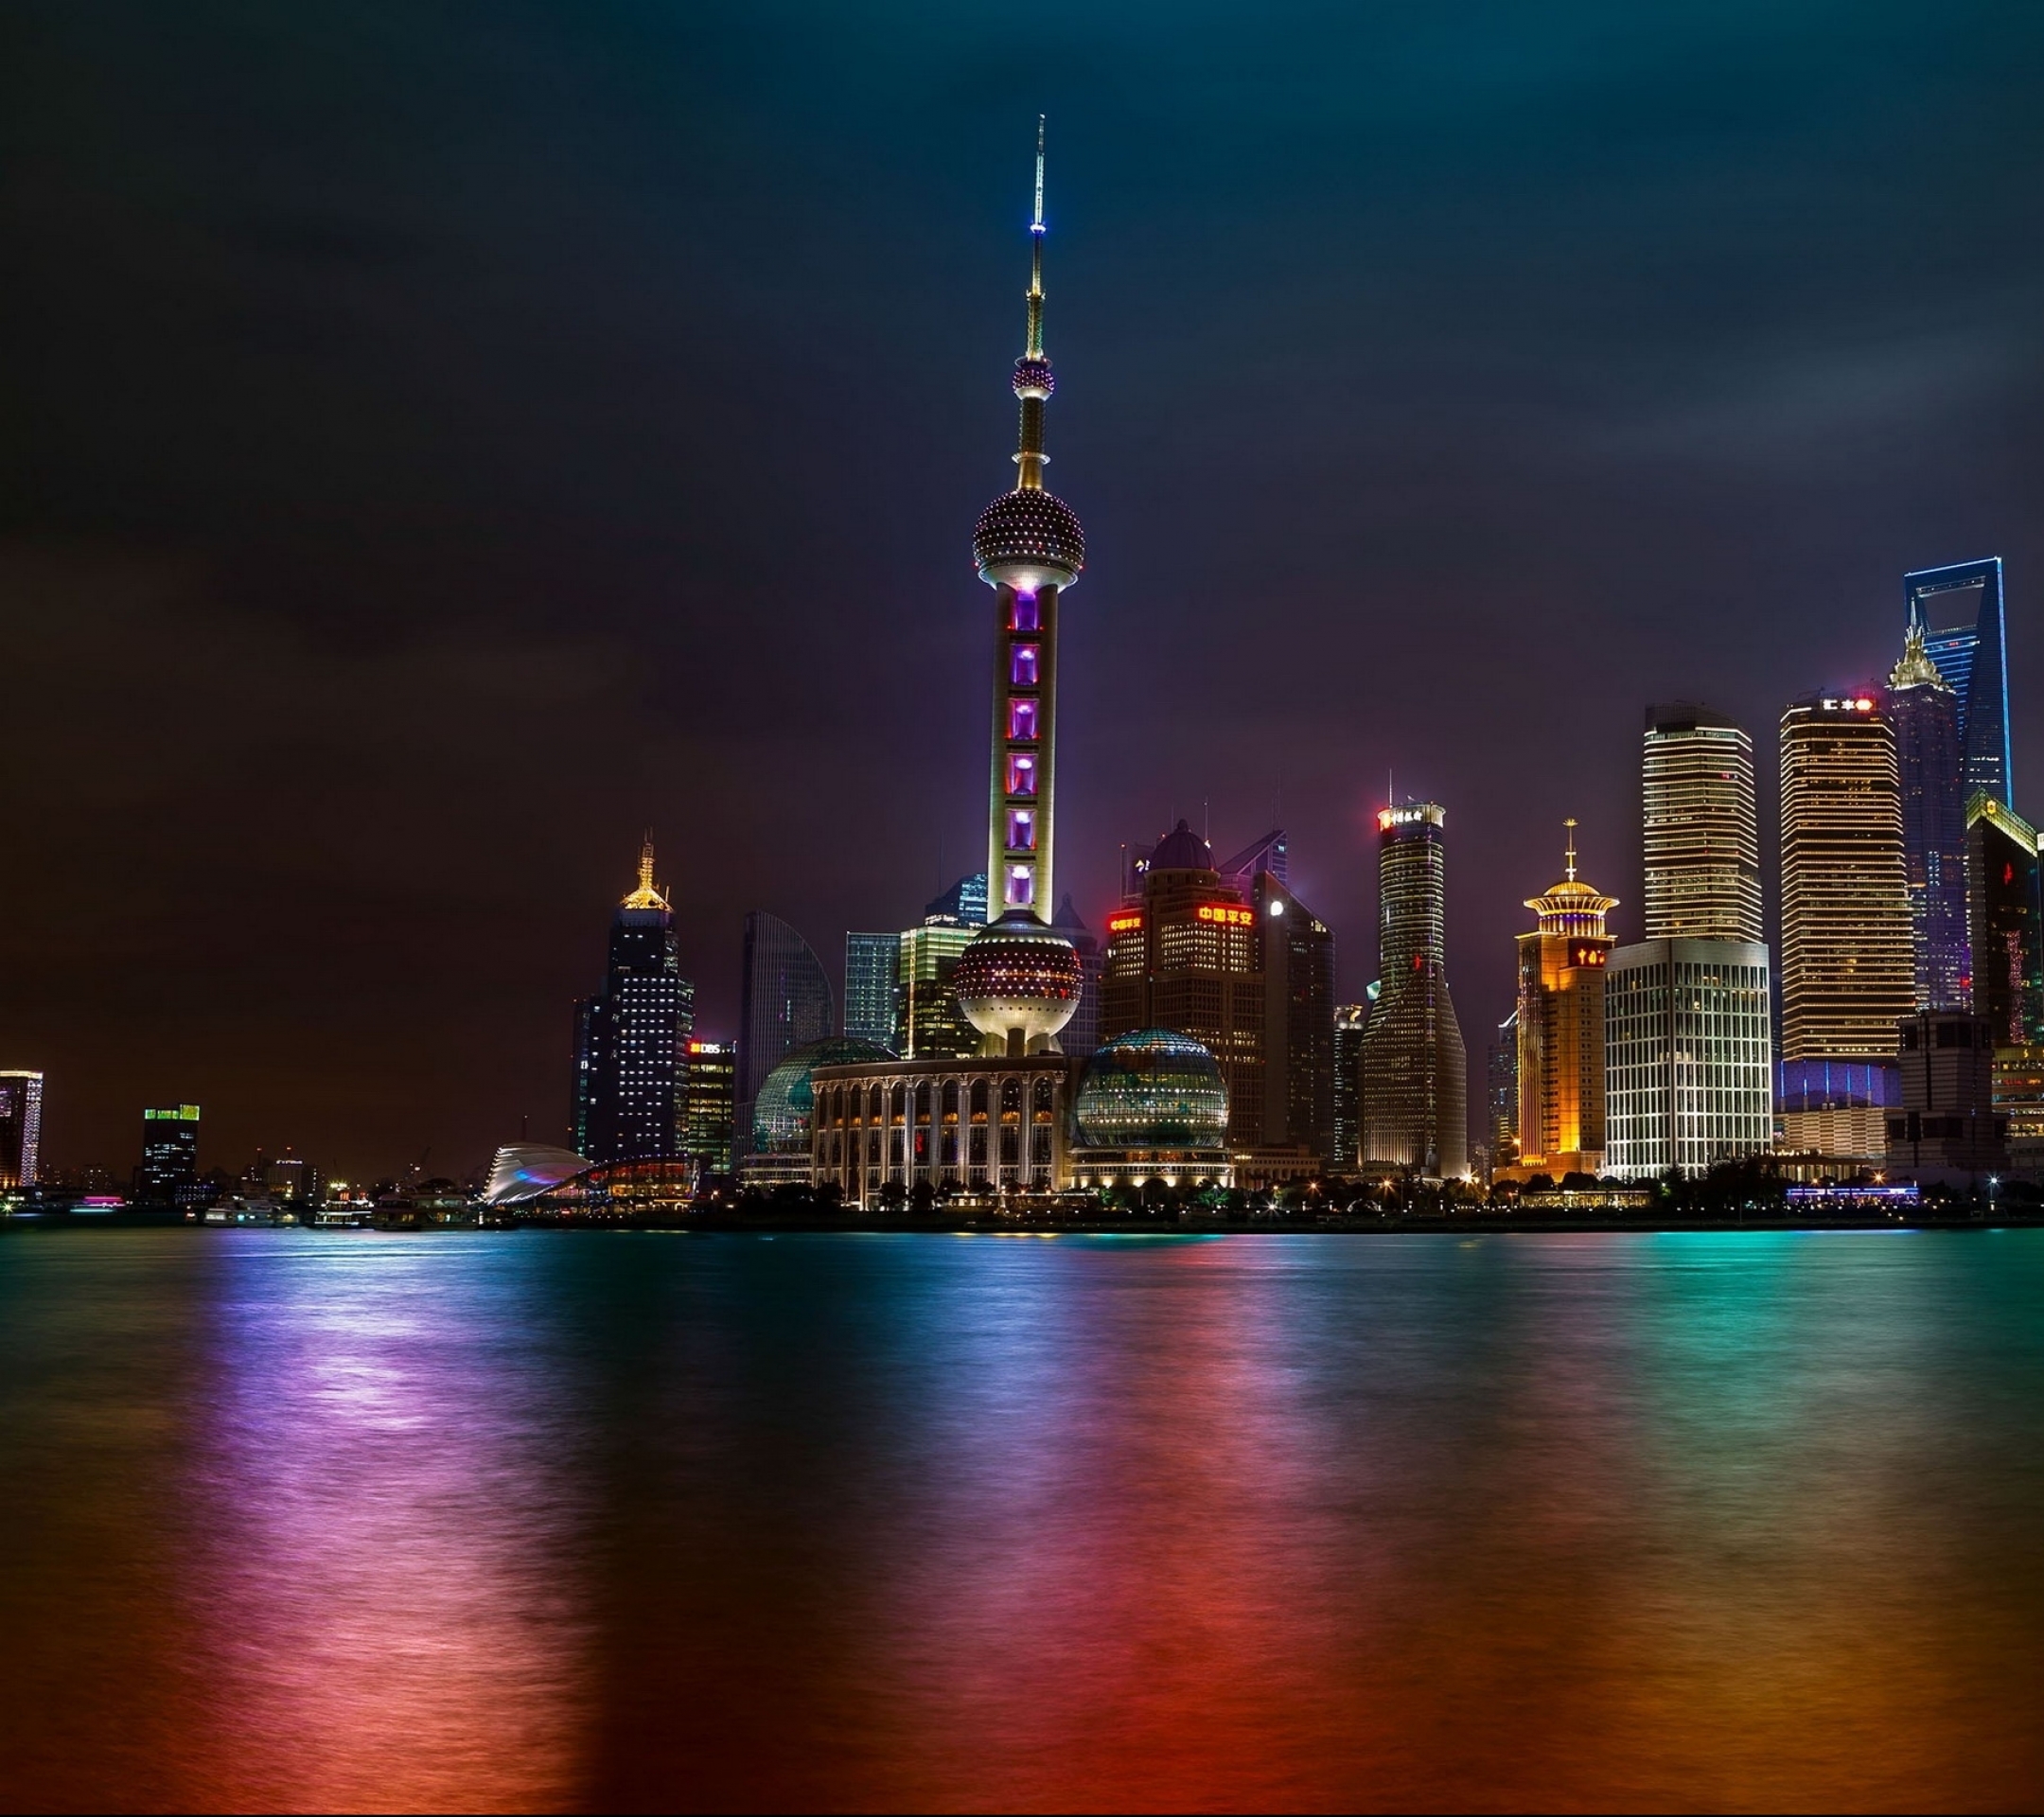 Descarga gratuita de fondo de pantalla para móvil de Ciudades, Shanghái, Hecho Por El Hombre.